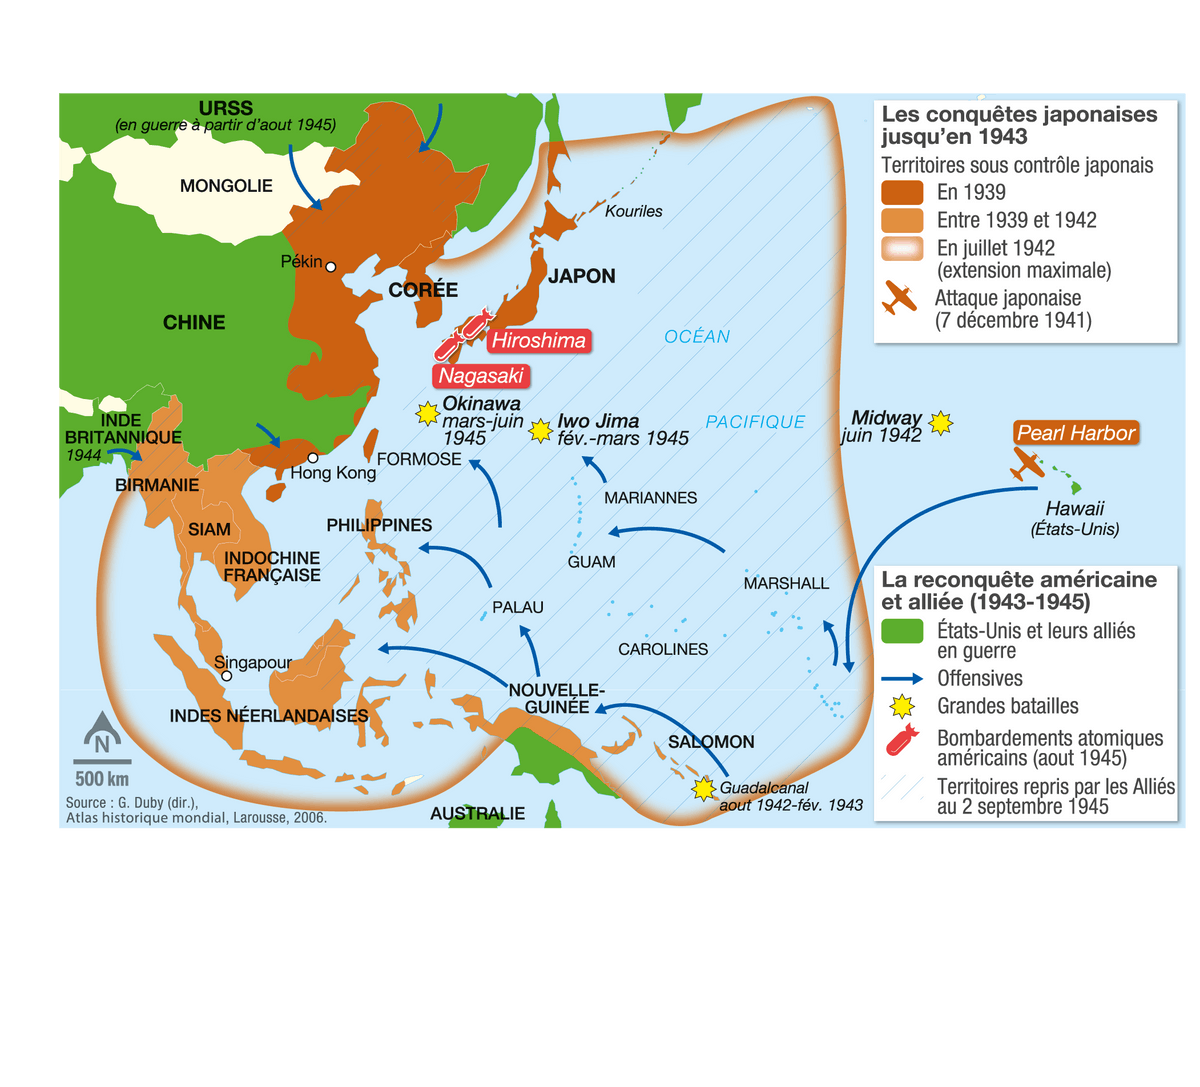 Doc. 3 La guerre en Asie-Pacifique (1941-1945)